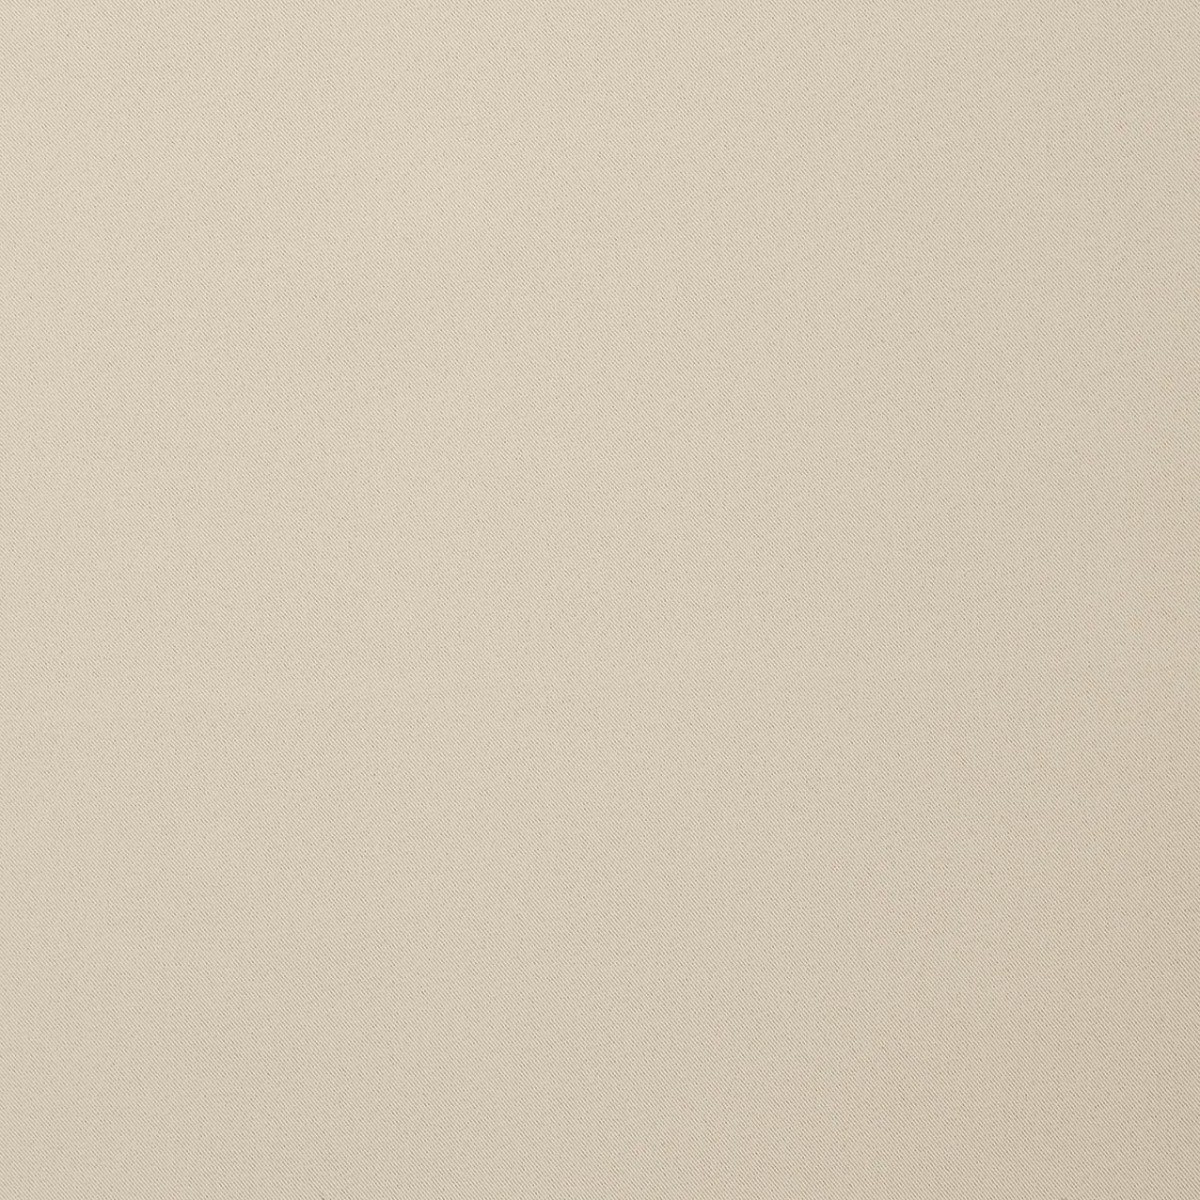  Универсальная портьерная ткань NOTTE BEIGE, ширина 300 см  - Фото